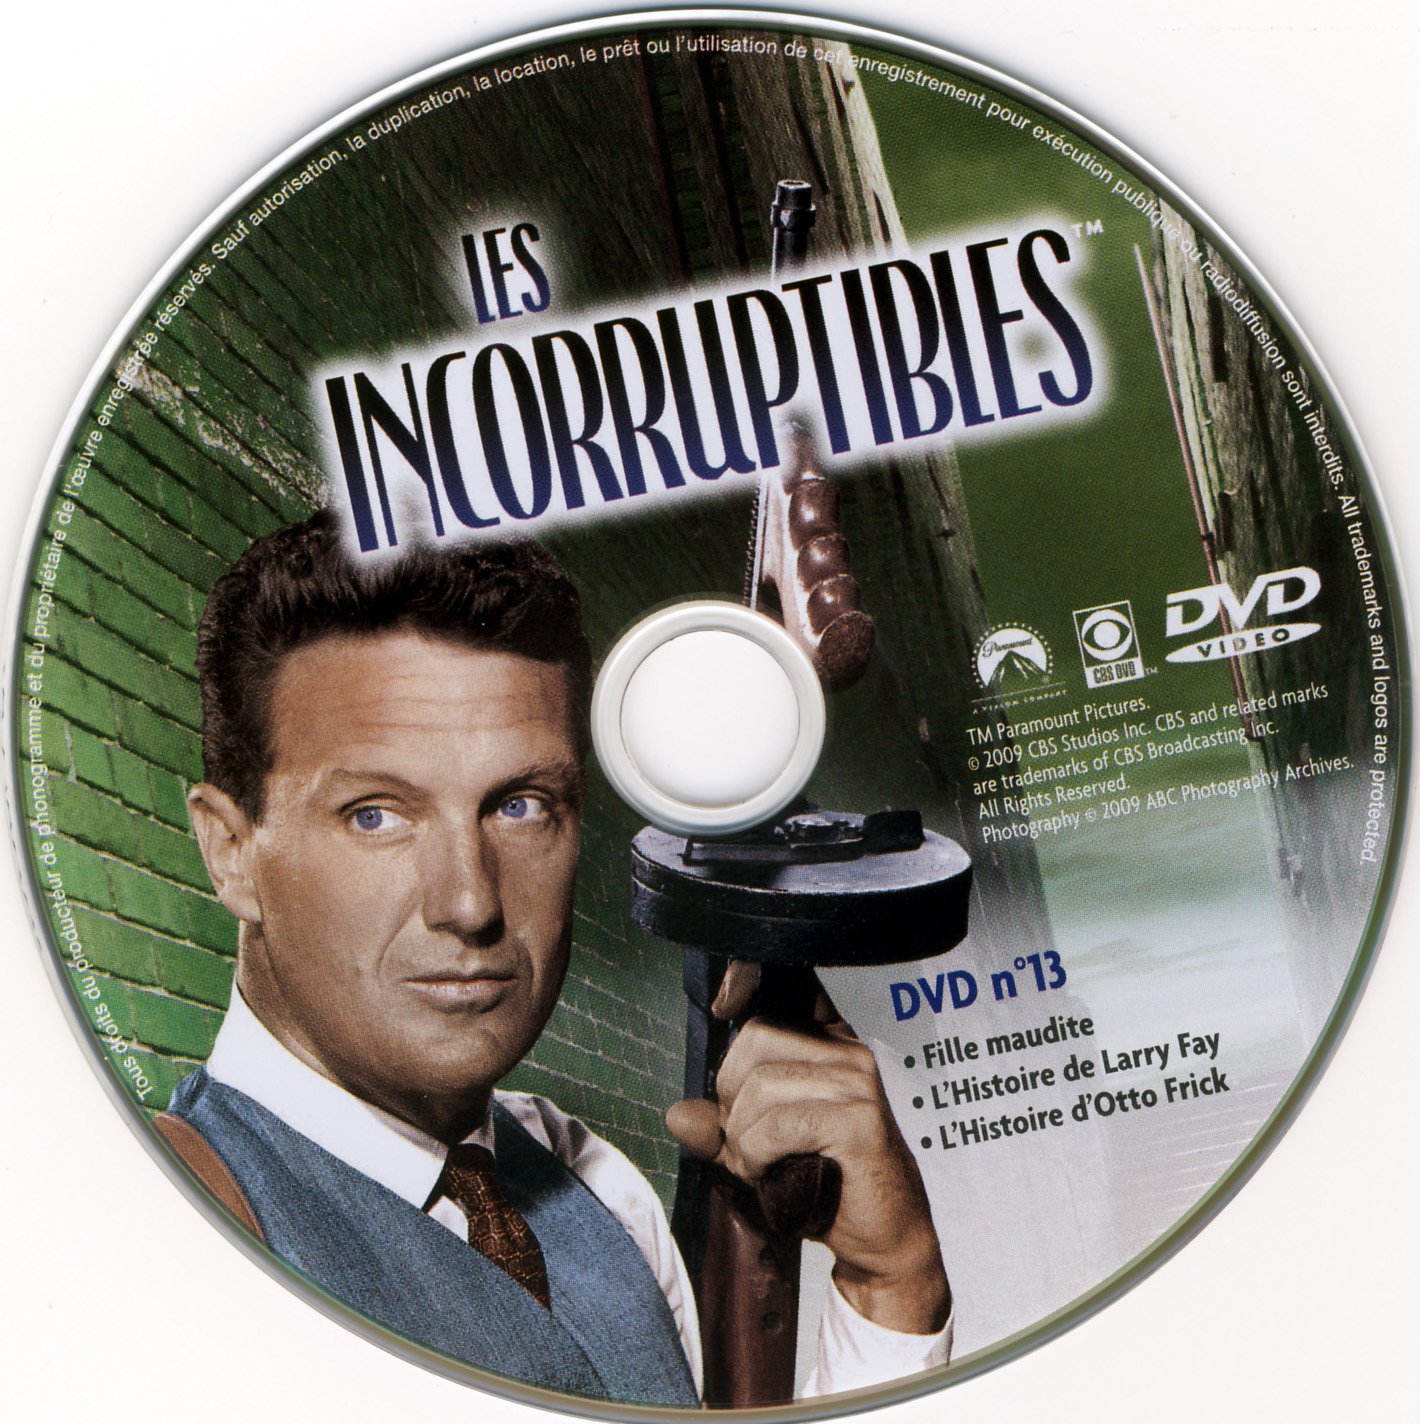 Les incorruptibles intgrale DVD 13